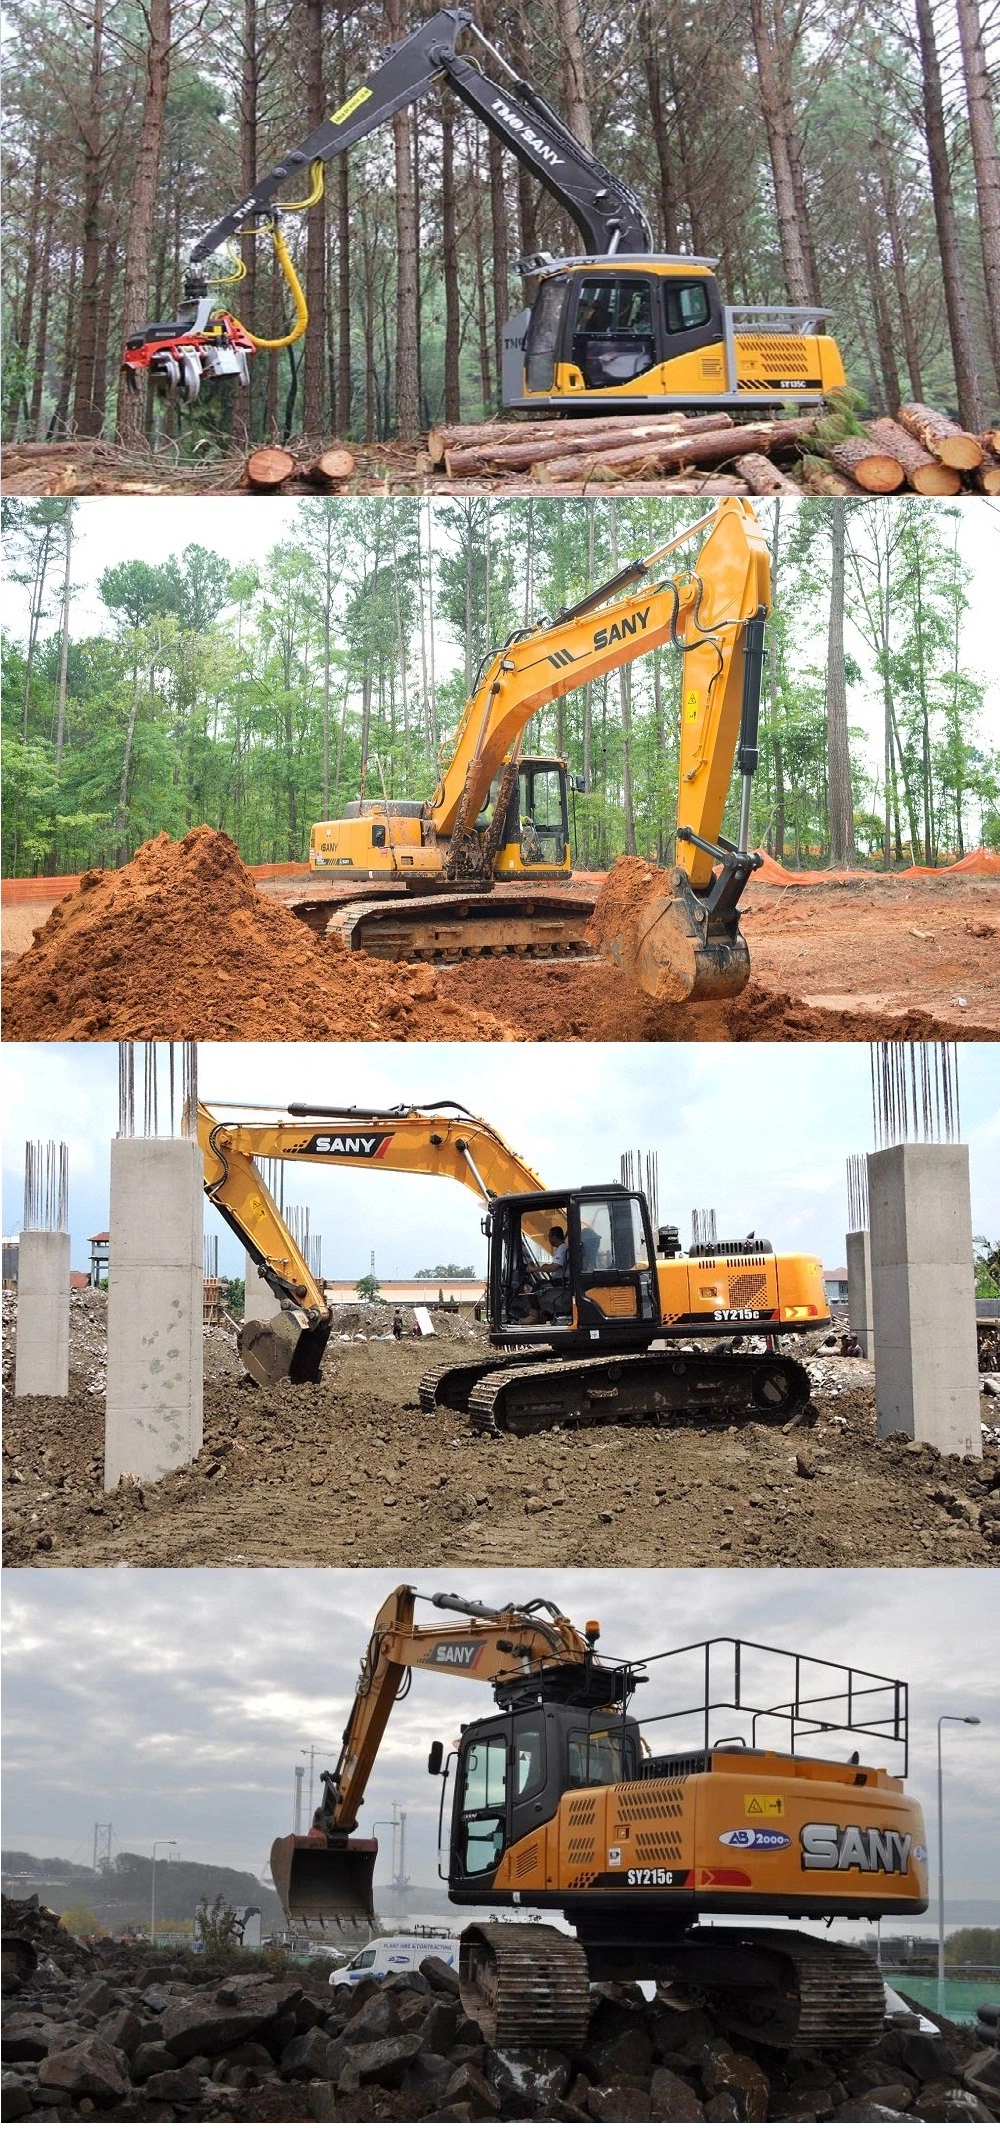 Sany Sy215c Mining Construction Machinery Medium Tracked Crawler Large Excavator